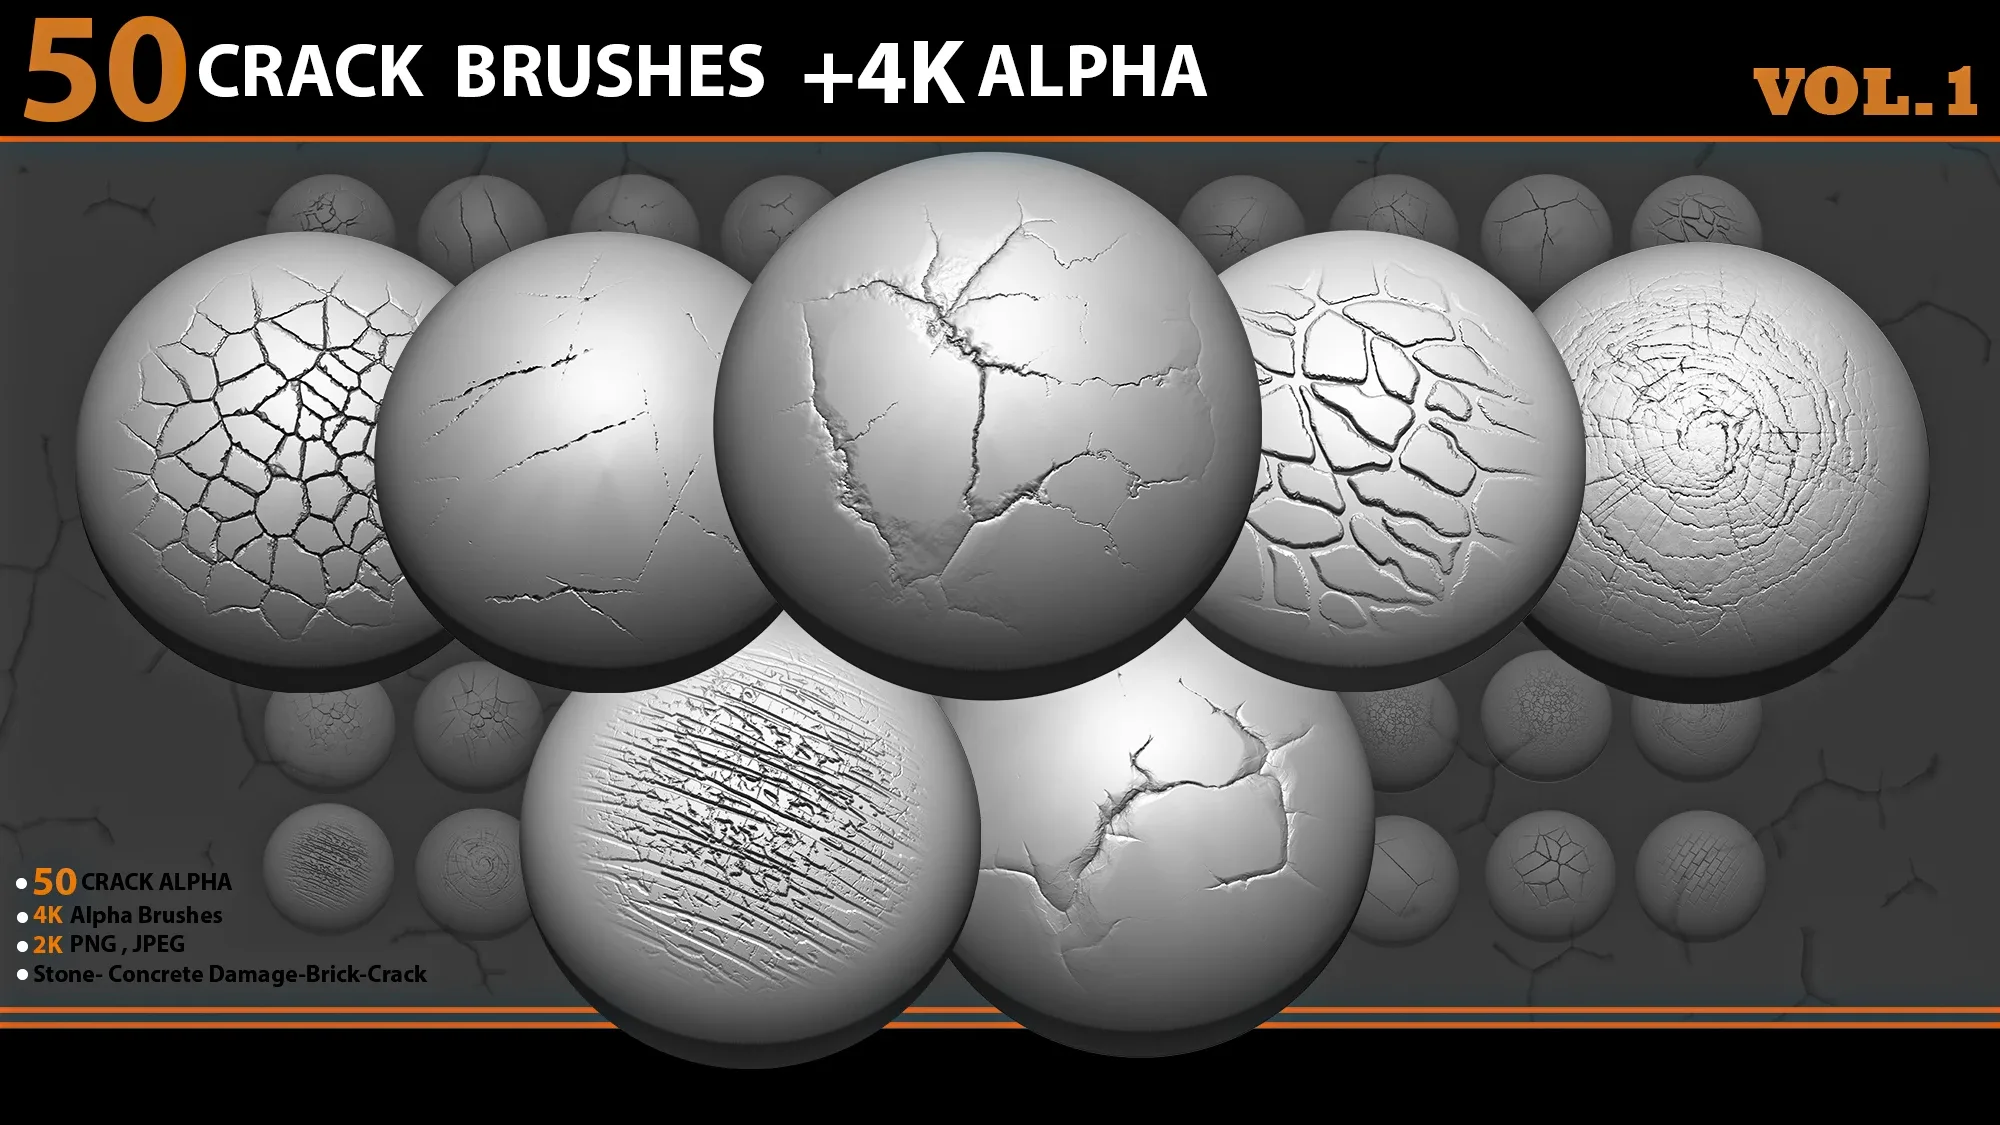 50 crack brushes+4k alpha